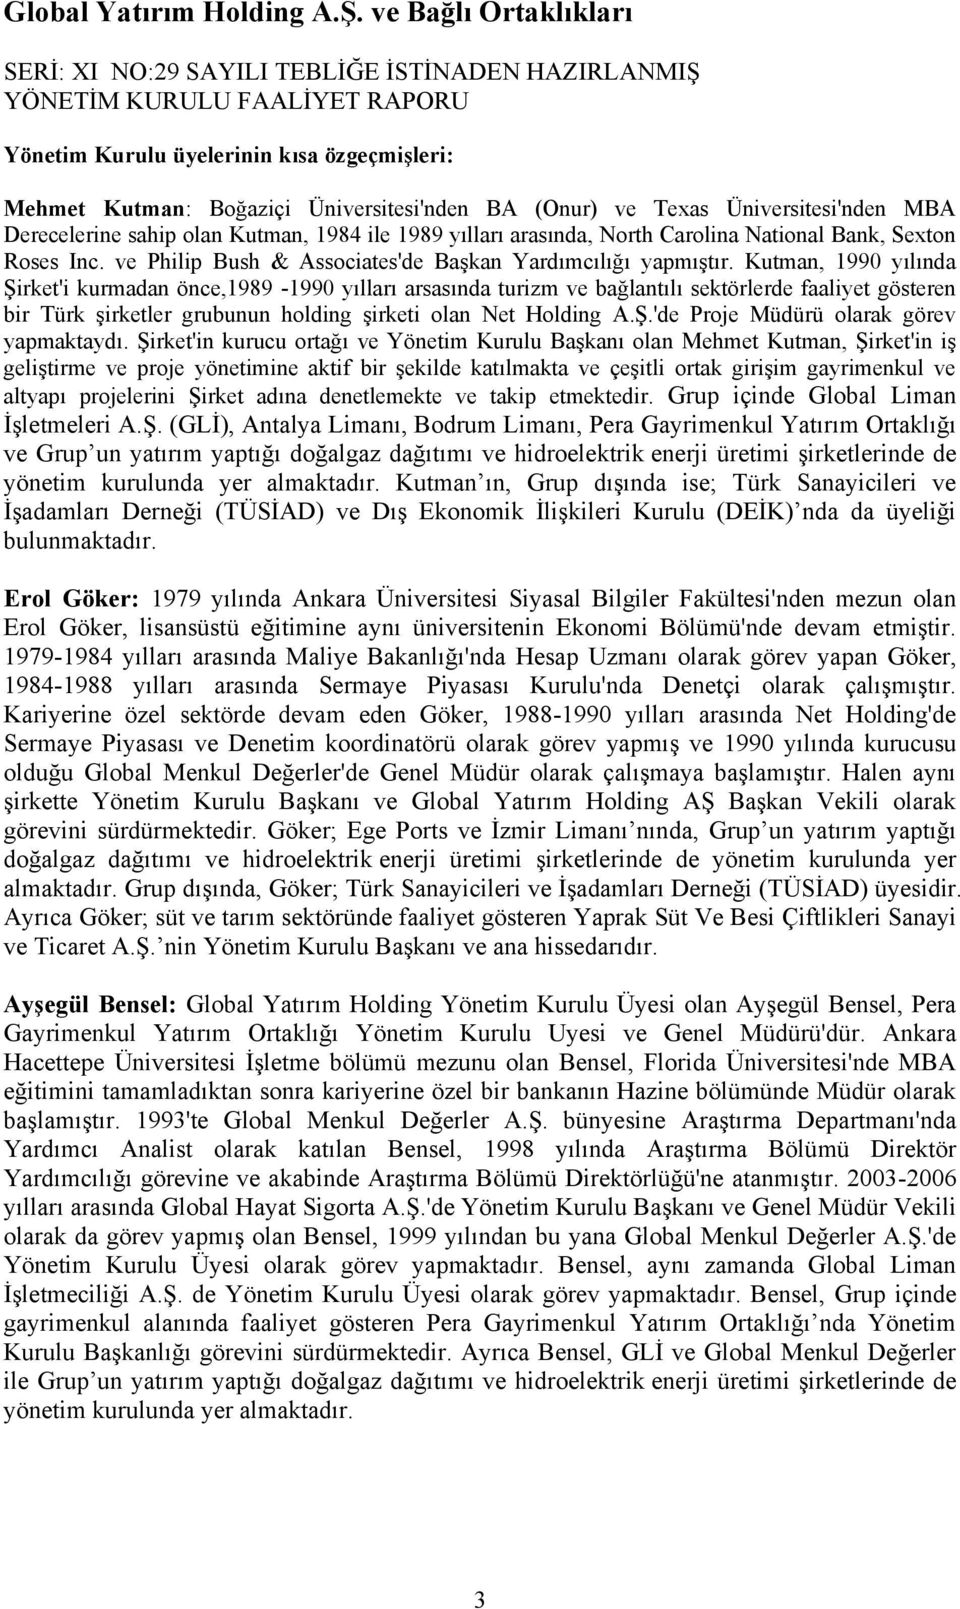 Kutman, 1990 yılında ġirket'i kurmadan önce,1989-1990 yılları arsasında turizm ve bağlantılı sektörlerde faaliyet gösteren bir Türk Ģirketler grubunun holding Ģirketi olan Net Holding A.ġ.'de Proje Müdürü olarak görev yapmaktaydı.